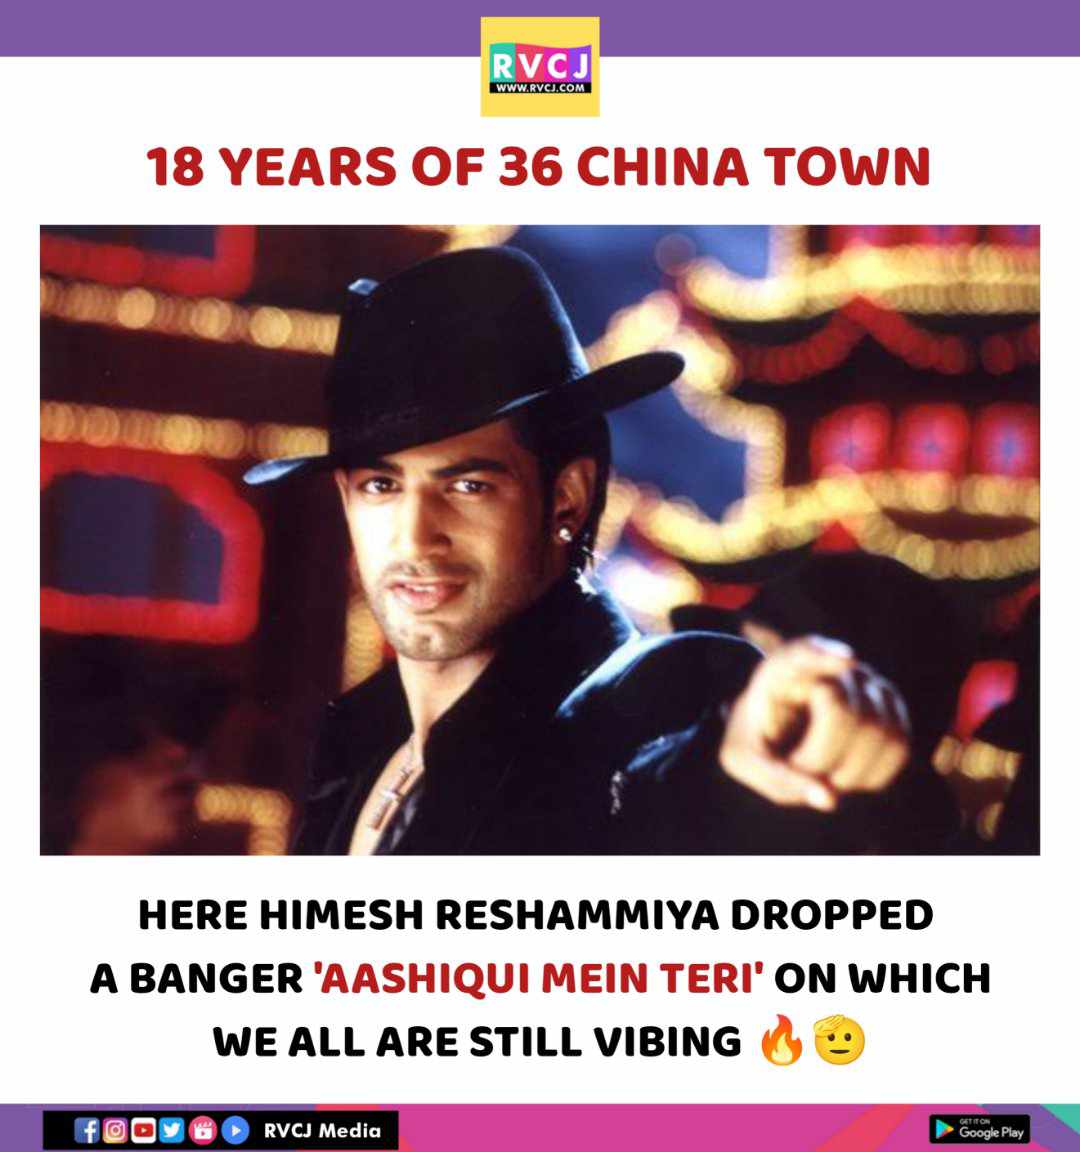 18 years of 36 China Town

#36chinatown #himeshreshammiya